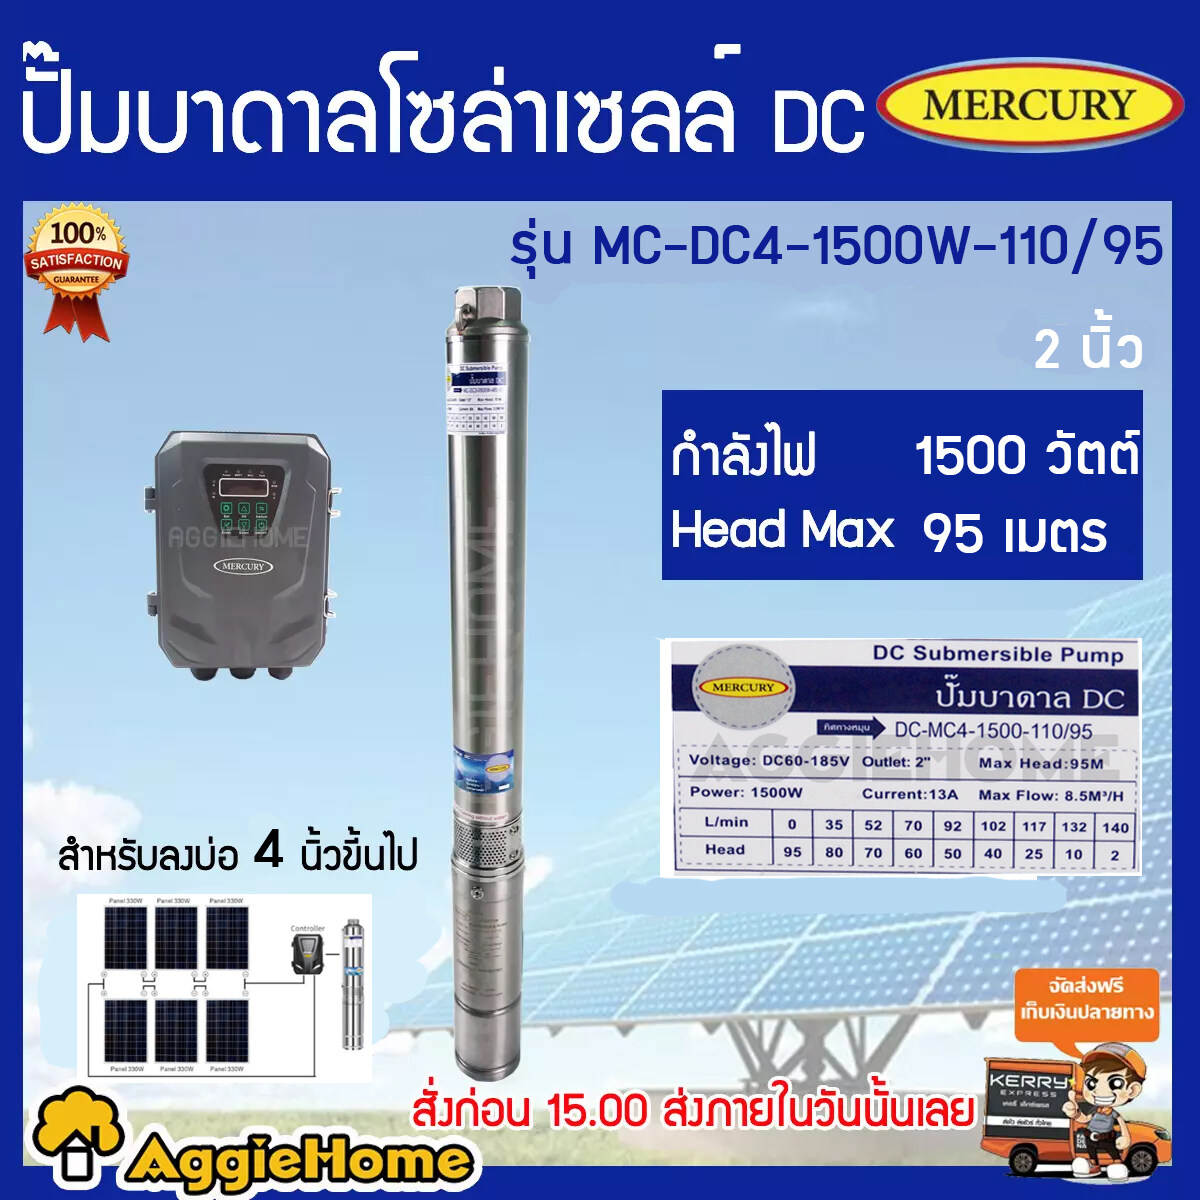 MERCURY ปั้มบาดาล รุ่น MC-DC4-1500W-110V/95